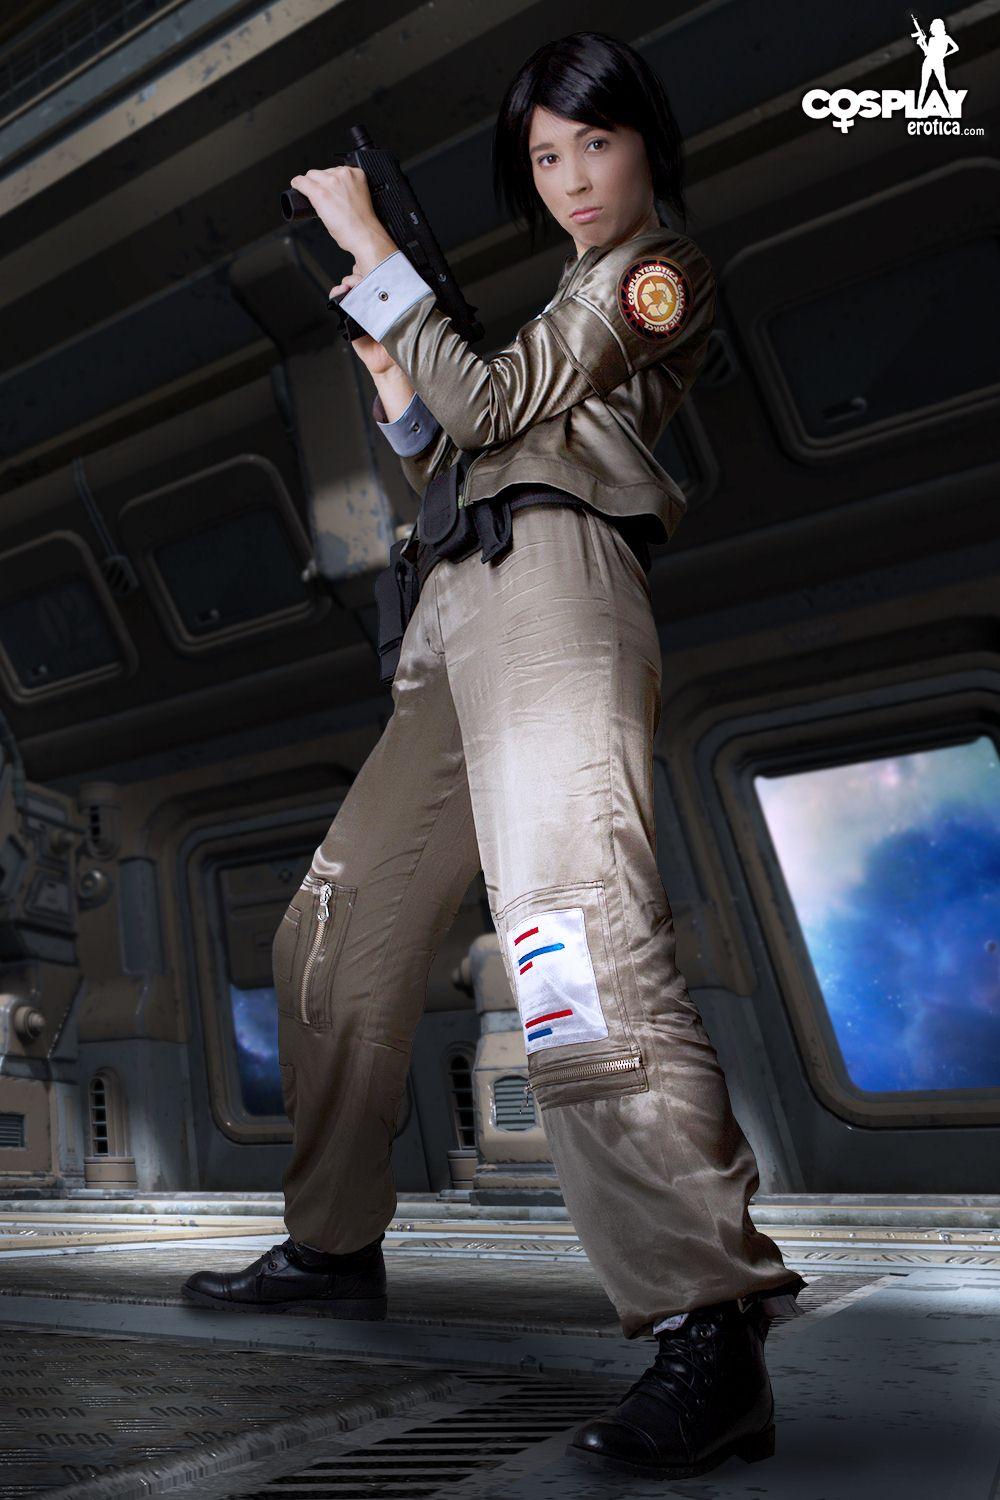 Immagini di stacy cosplayer caldo vestito per dovere su battlestar galactica
 #60298251